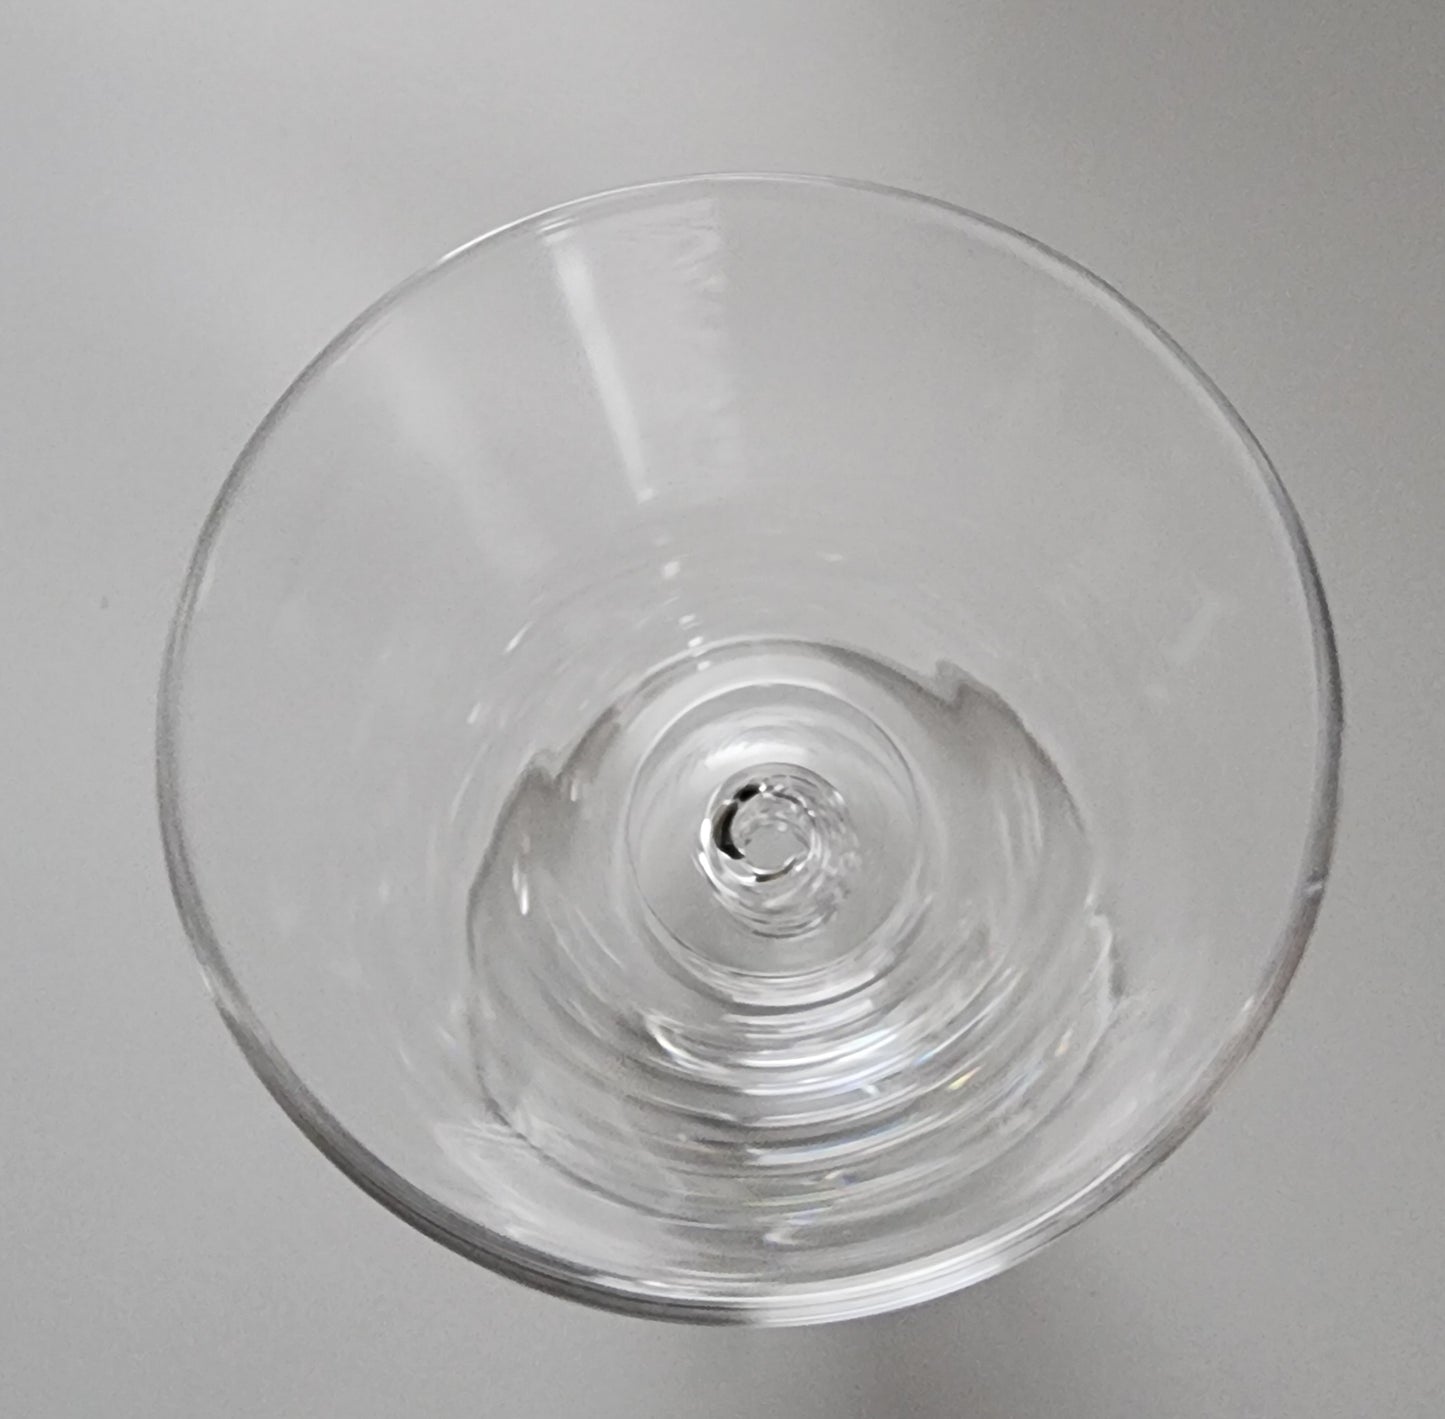 Steuben air twist cocktail glass